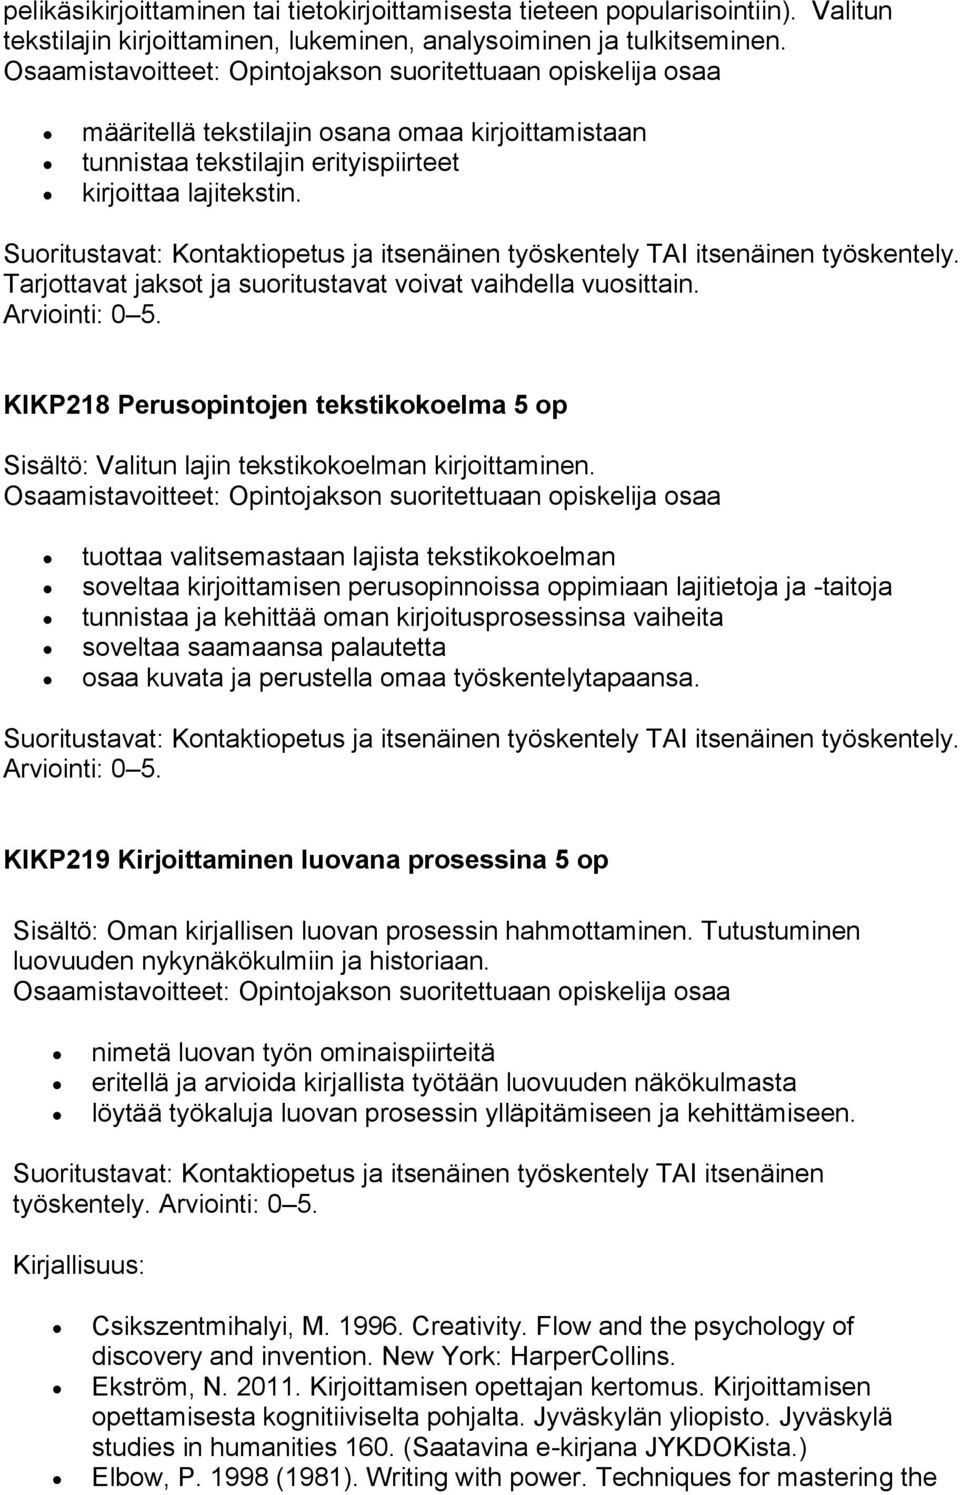 KIKP218 Perusopintojen tekstikokoelma 5 op Sisältö: Valitun lajin tekstikokoelman kirjoittaminen.